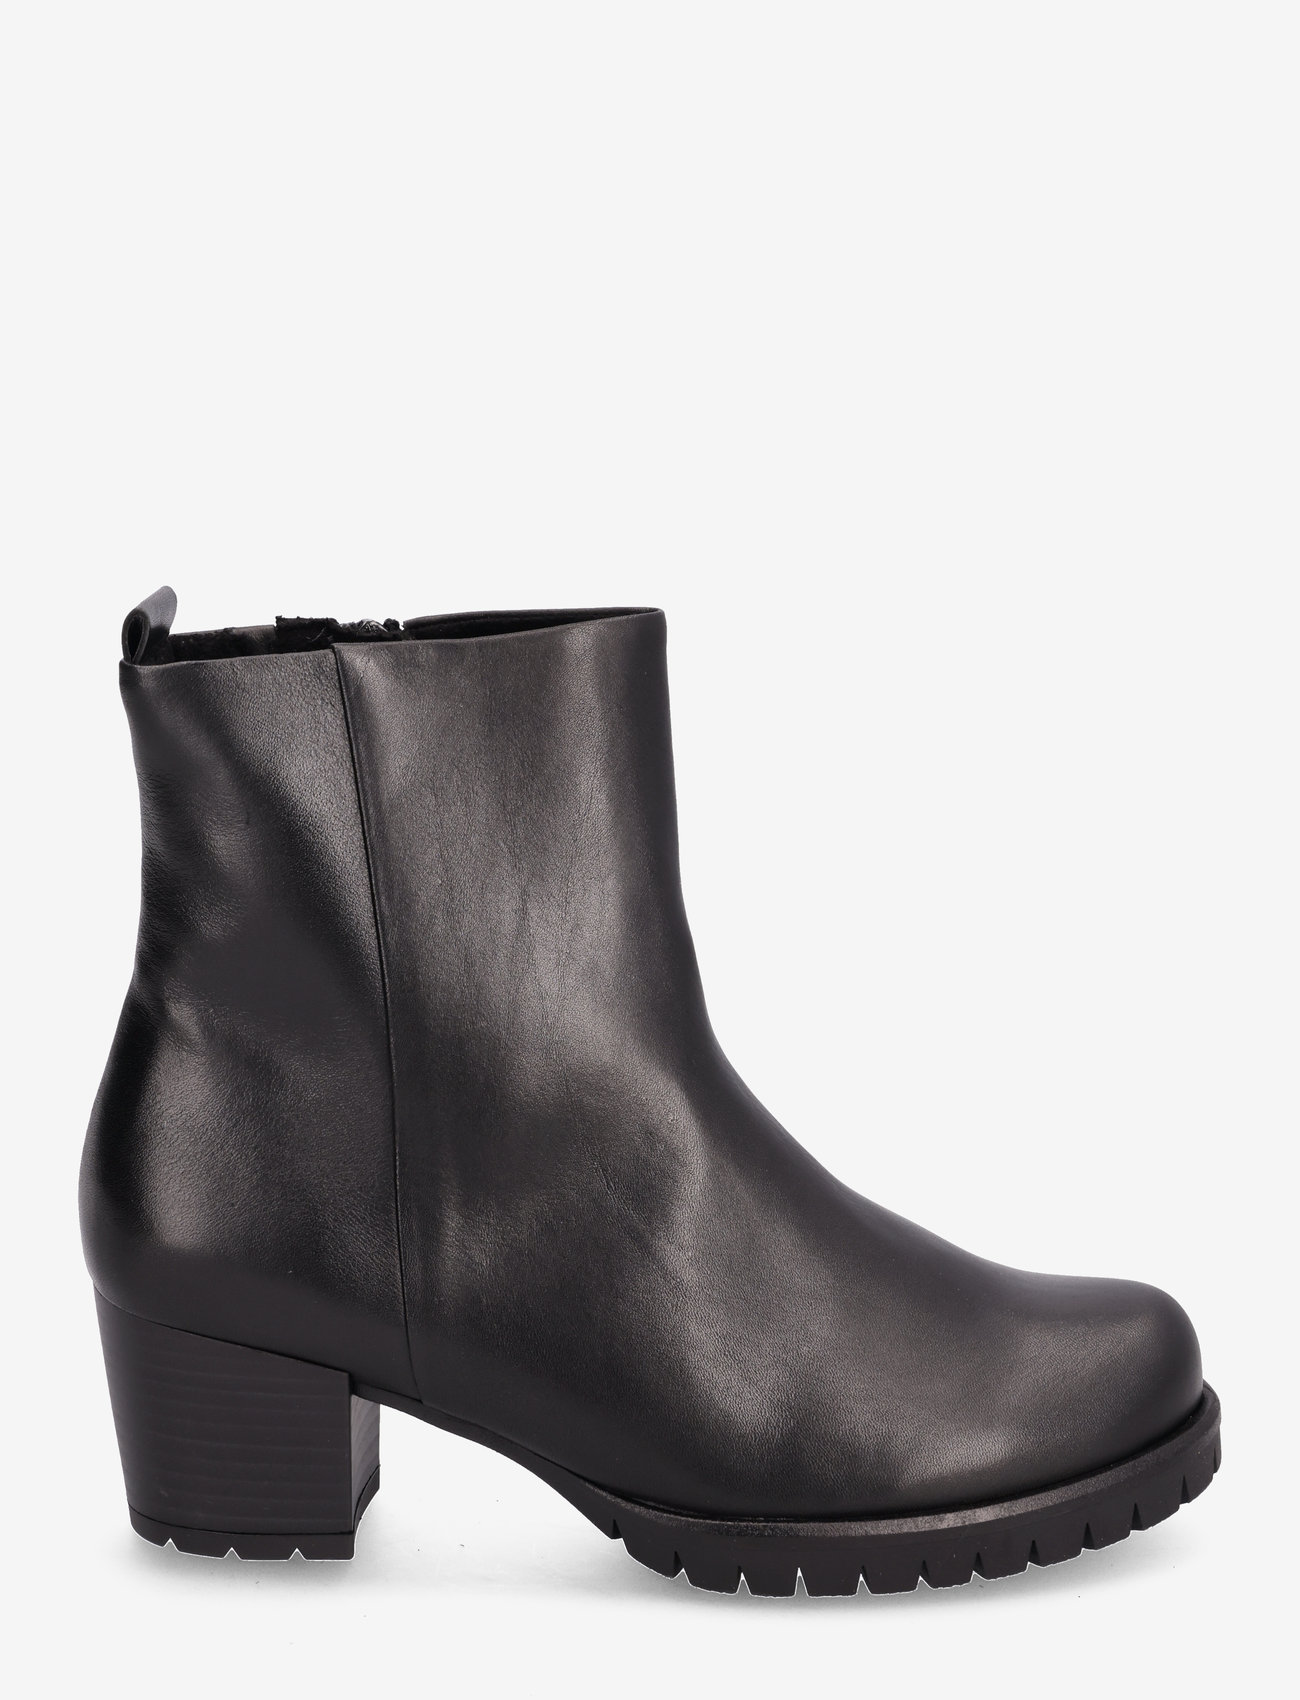 Gabor - Ankle boot - støvletter - black - 1